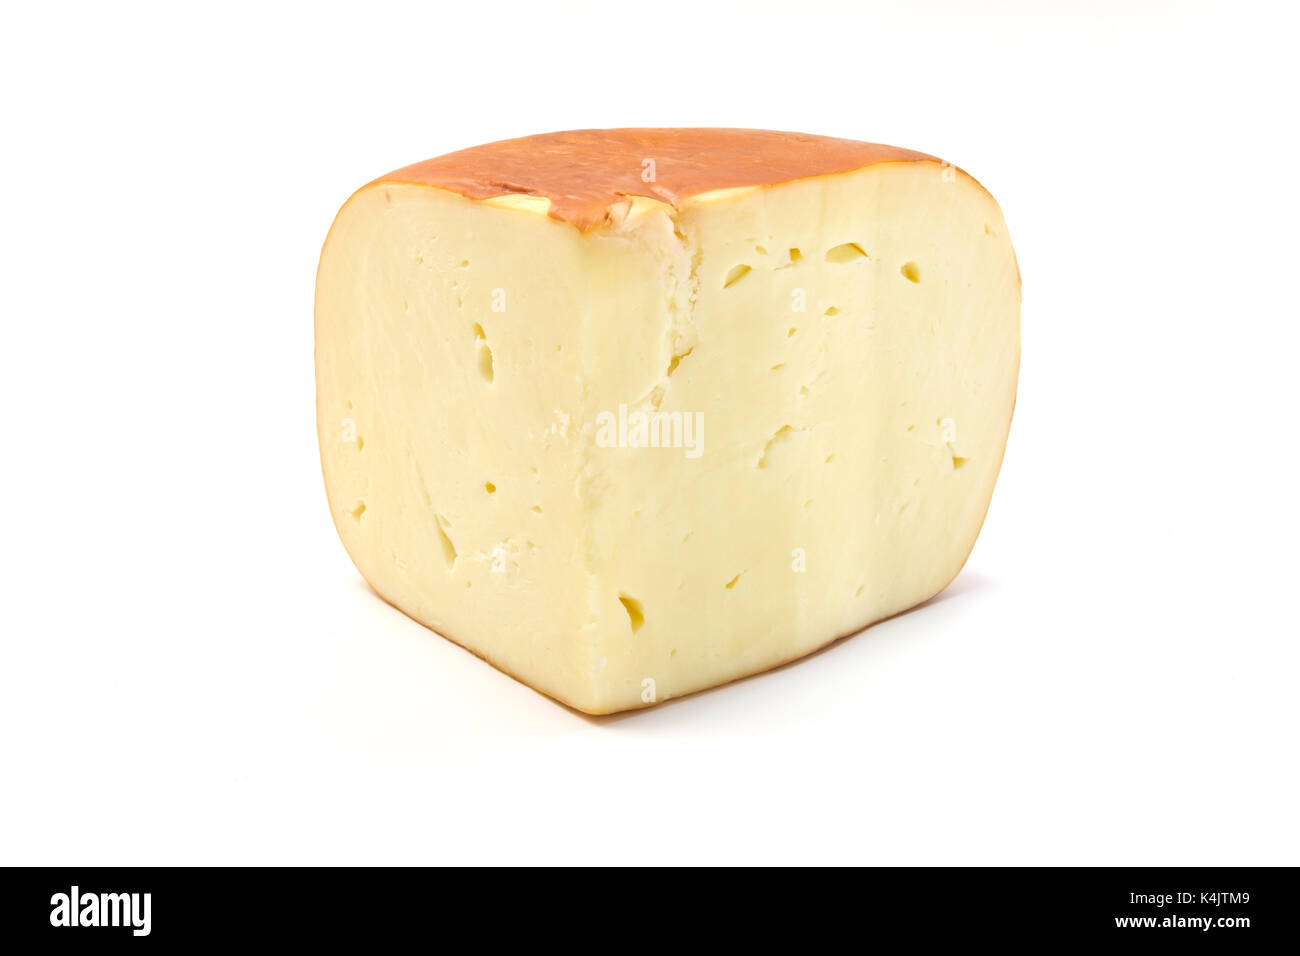 Smoked sulguni cheese on a white background Stock Photo